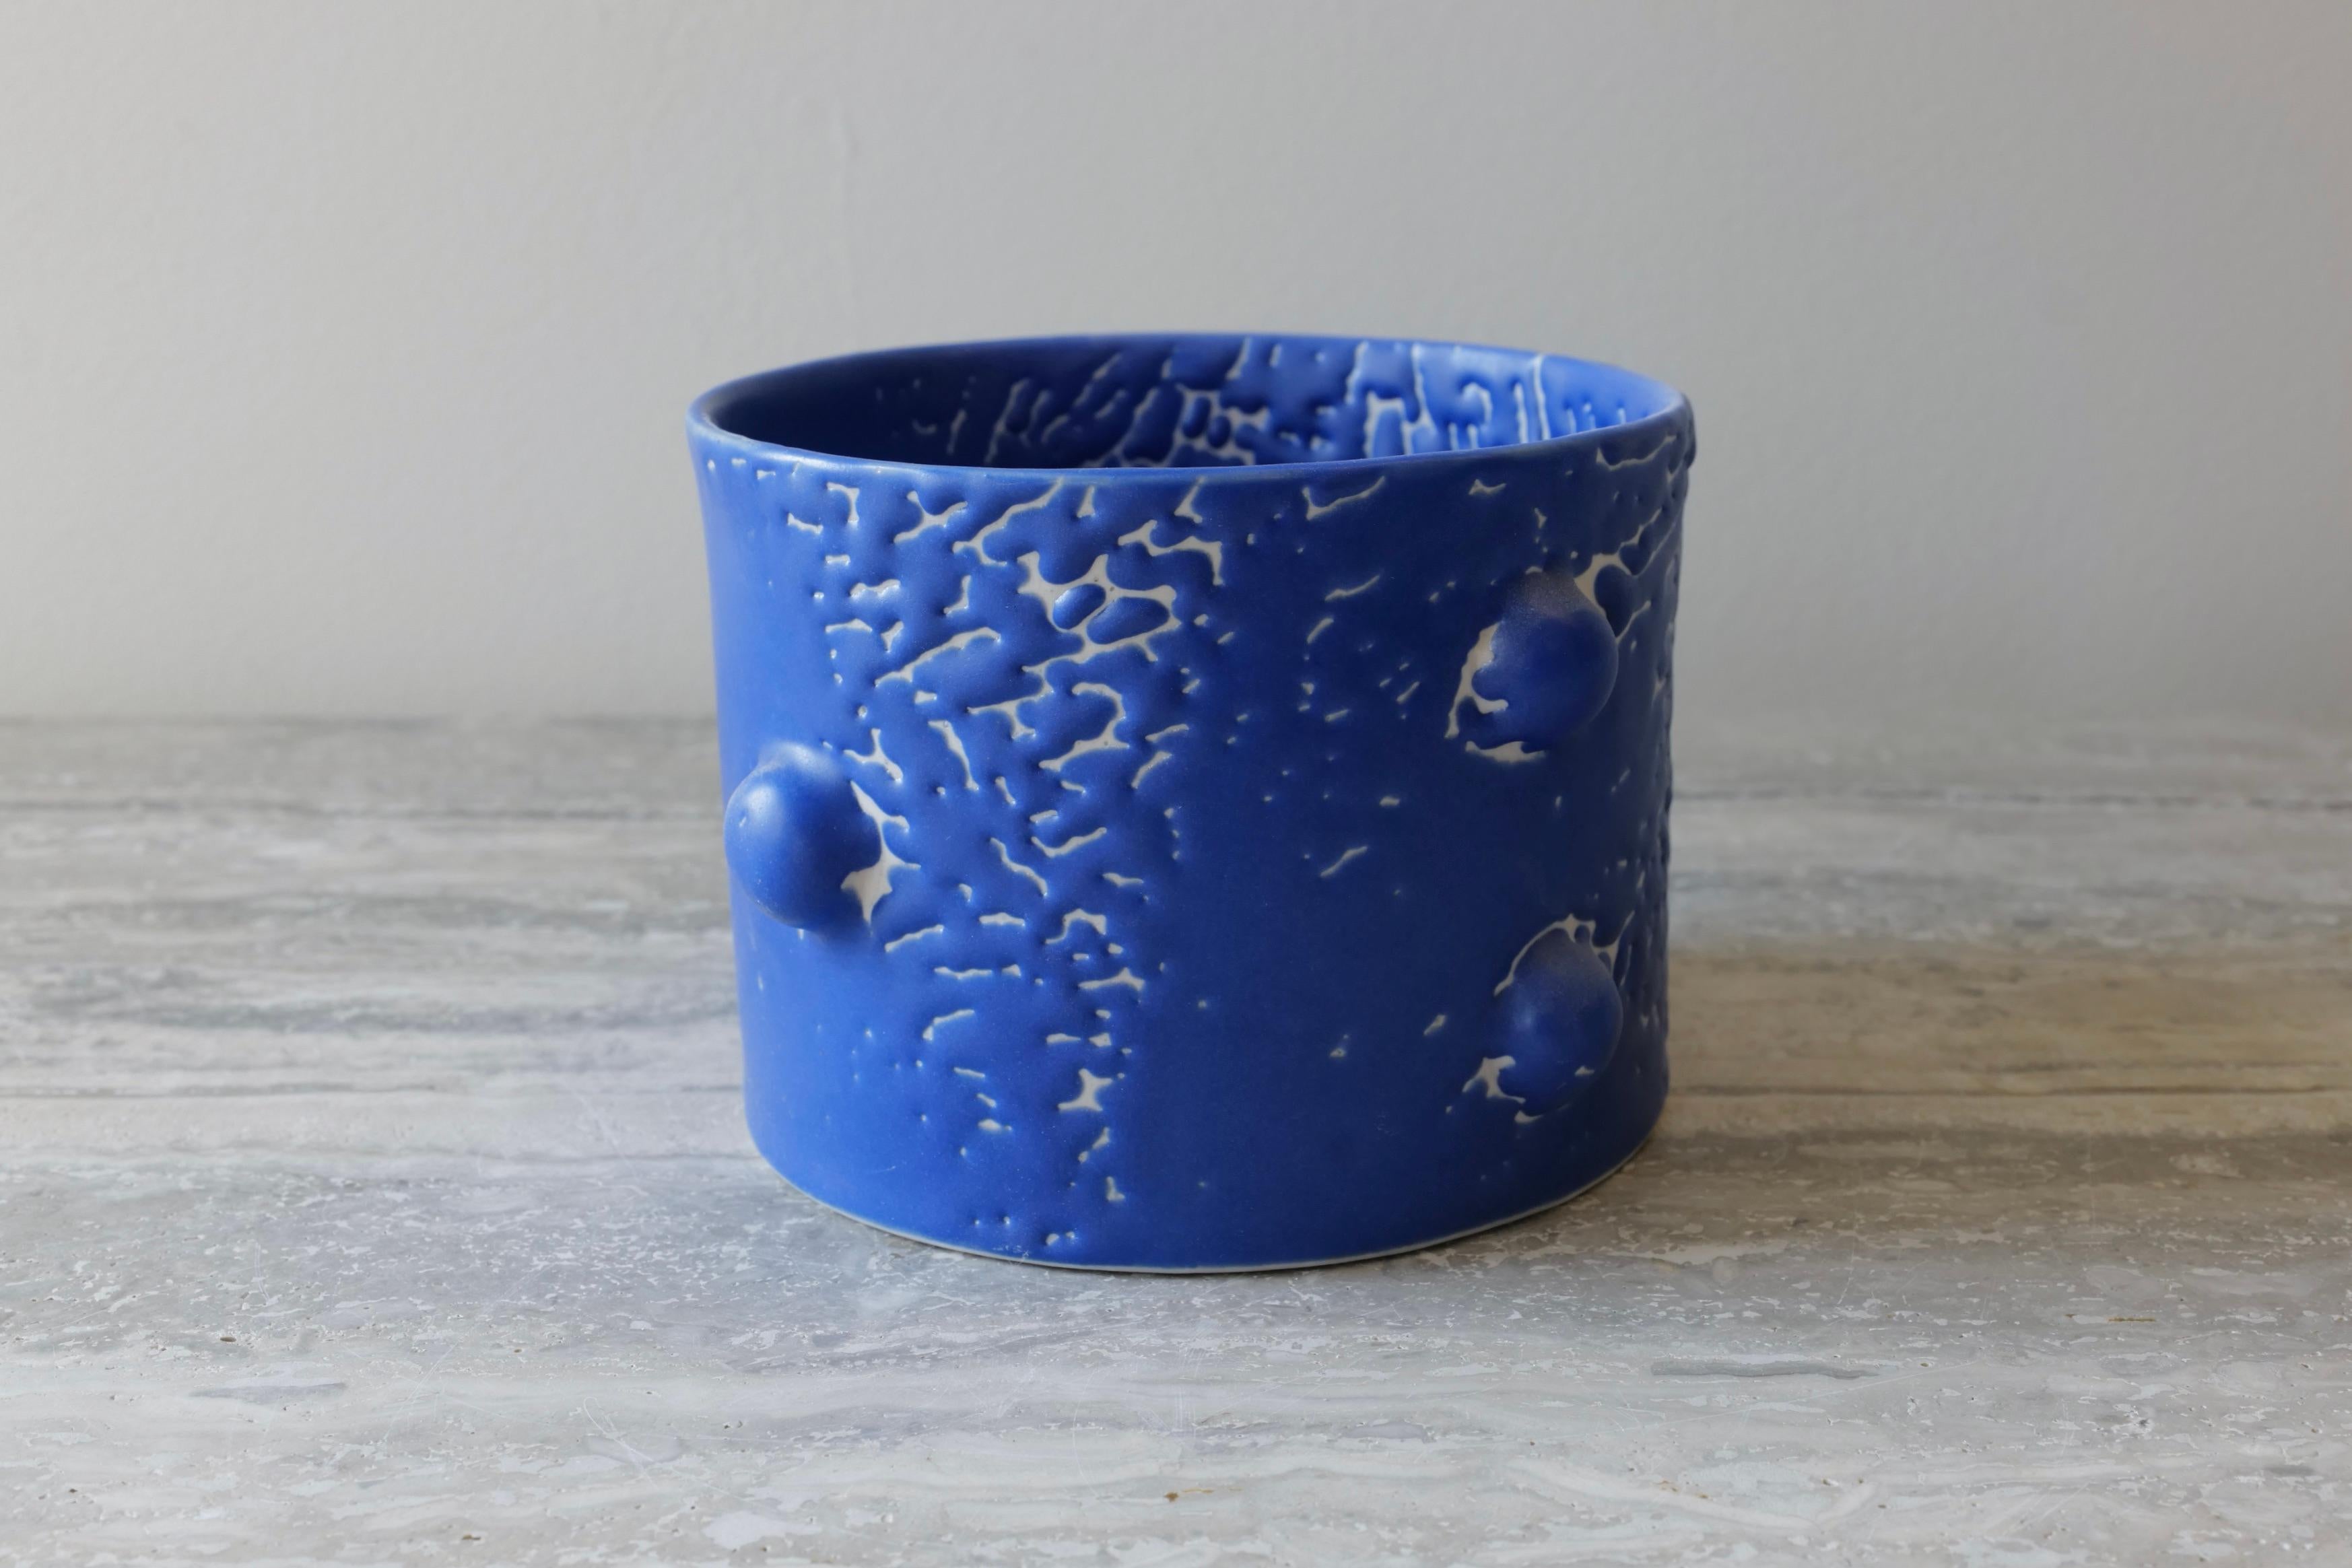 Ce vase court et élégant est moulé à la main en porcelaine et émaillé d'une riche glaçure microcristalline au cobalt qui présente une belle texture craquelée sur toute la surface du récipient. Le motif des 